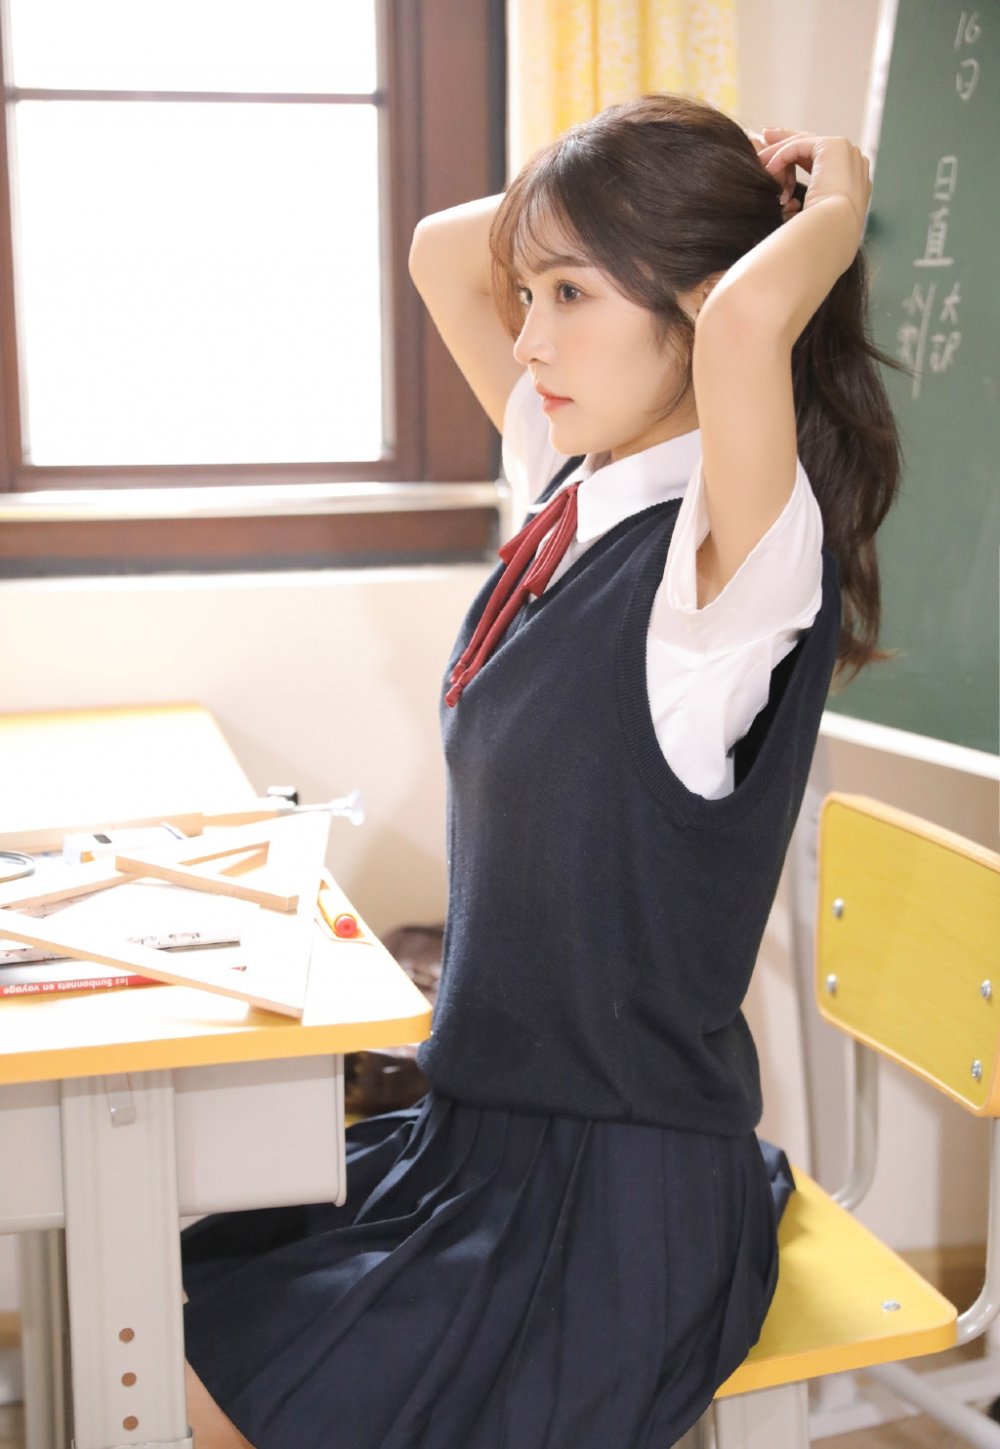 清纯美女学生妹jk制服教室图片